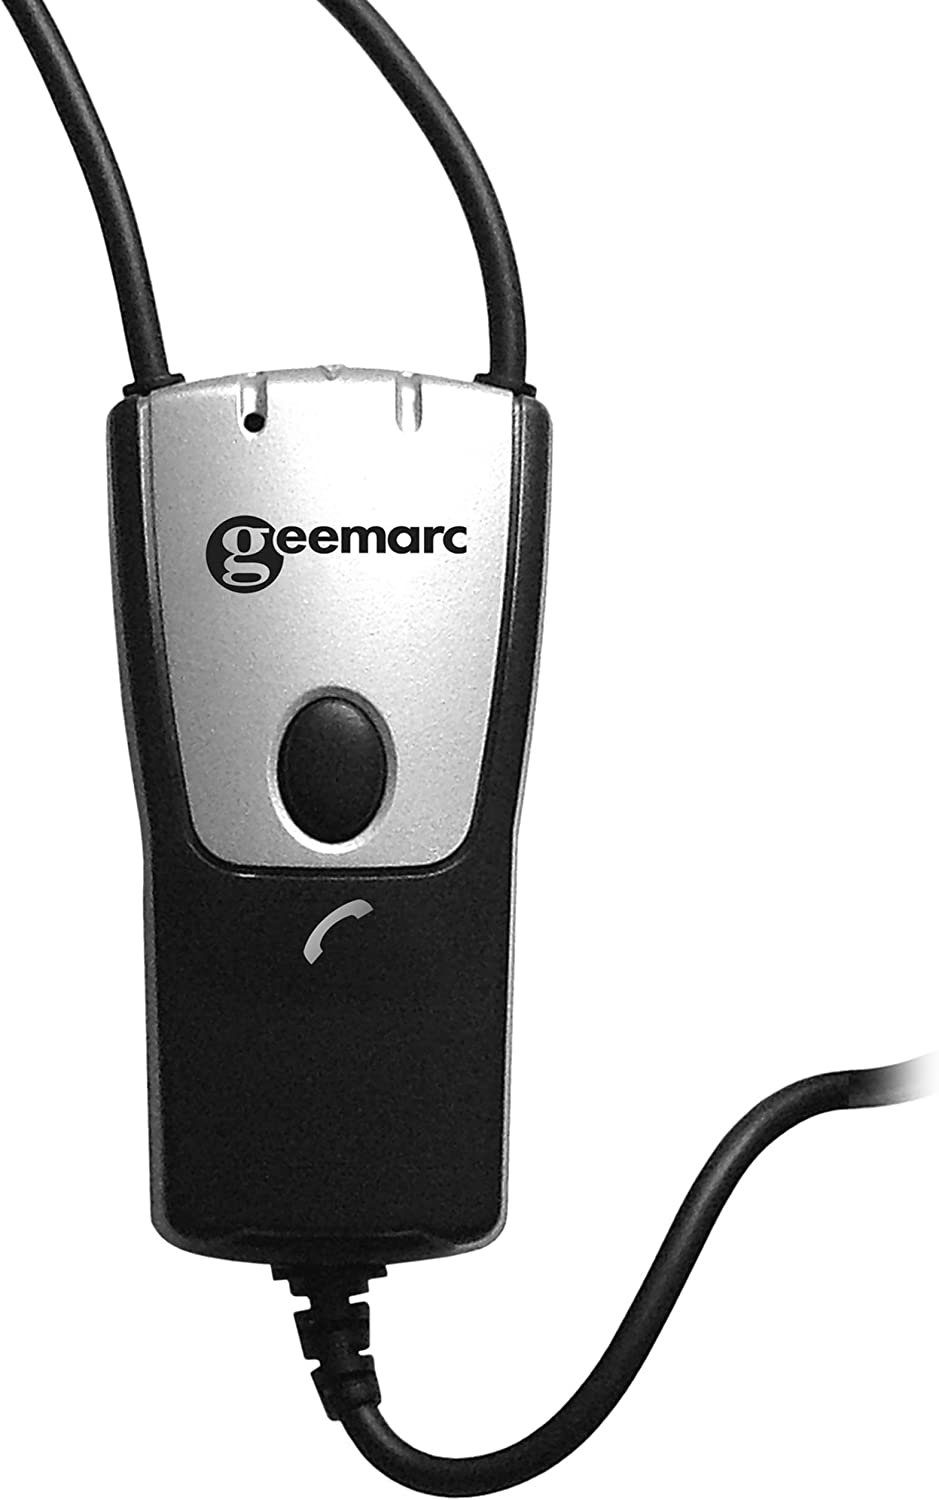 Audioverstärker iLoop+ Induktionsschlinge für Geemarc Geemarc Hörgeräte